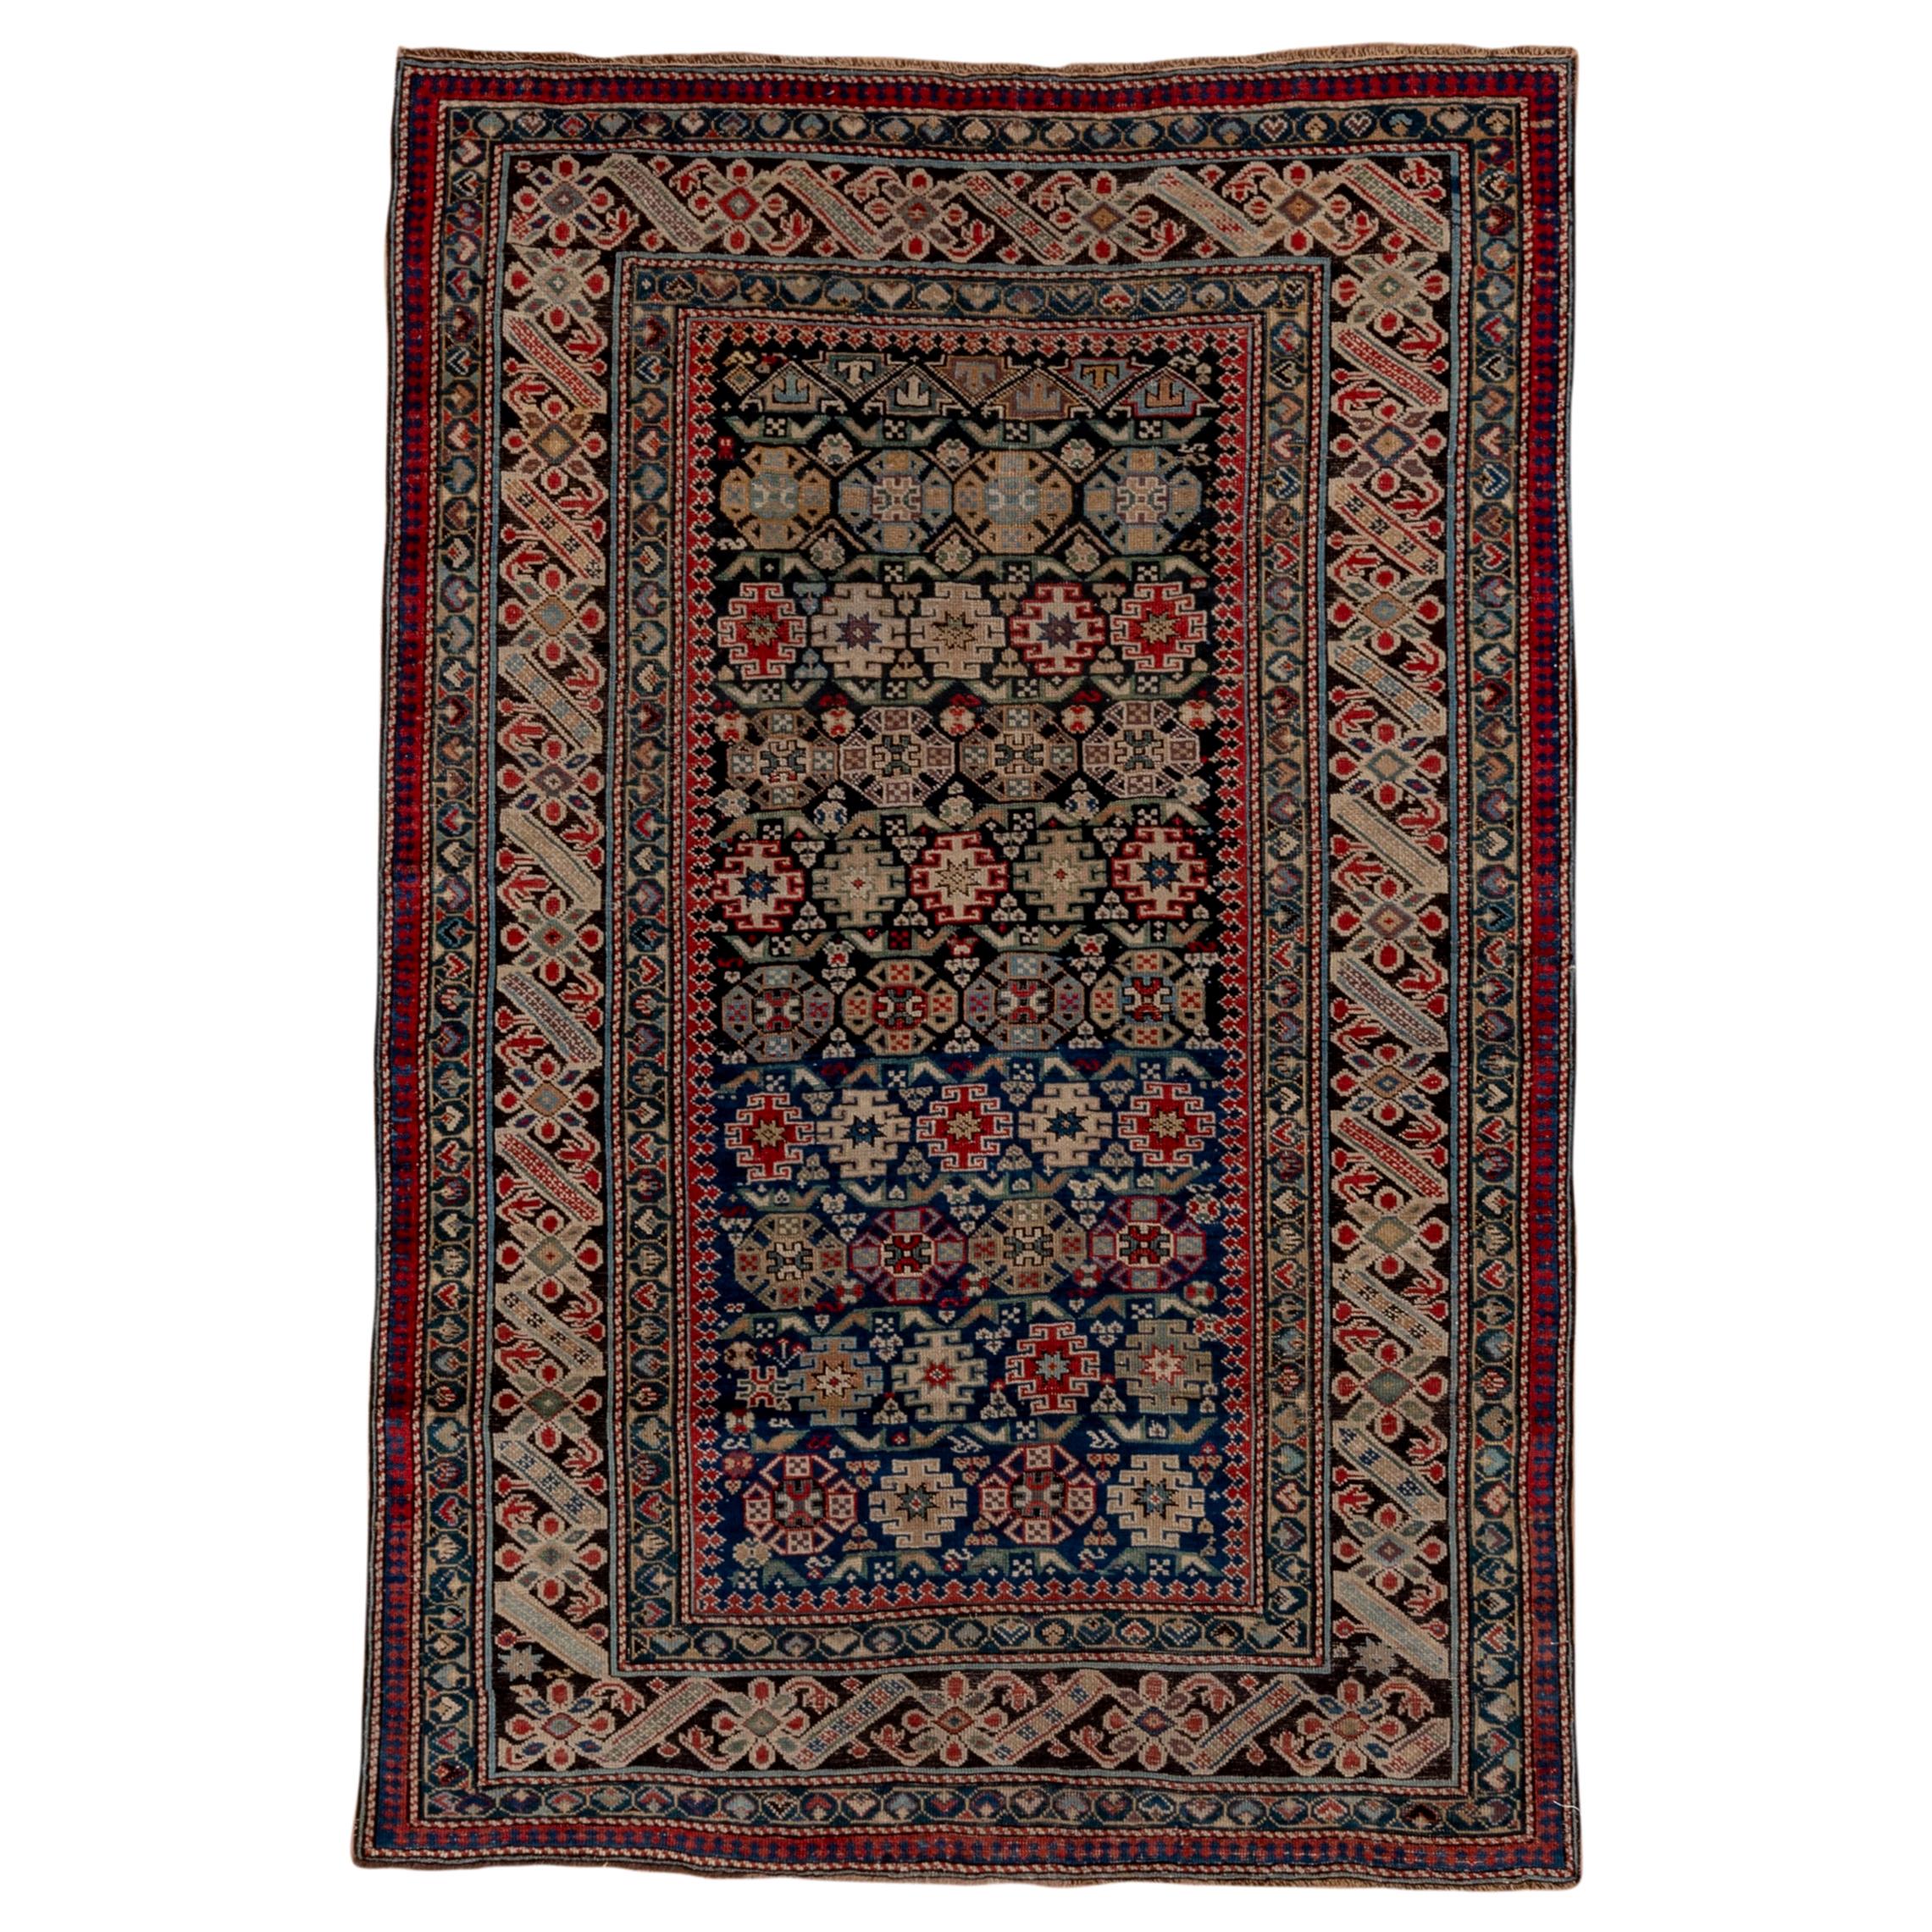 Rare tapis caucasien ancien Chichi, vers 1900s